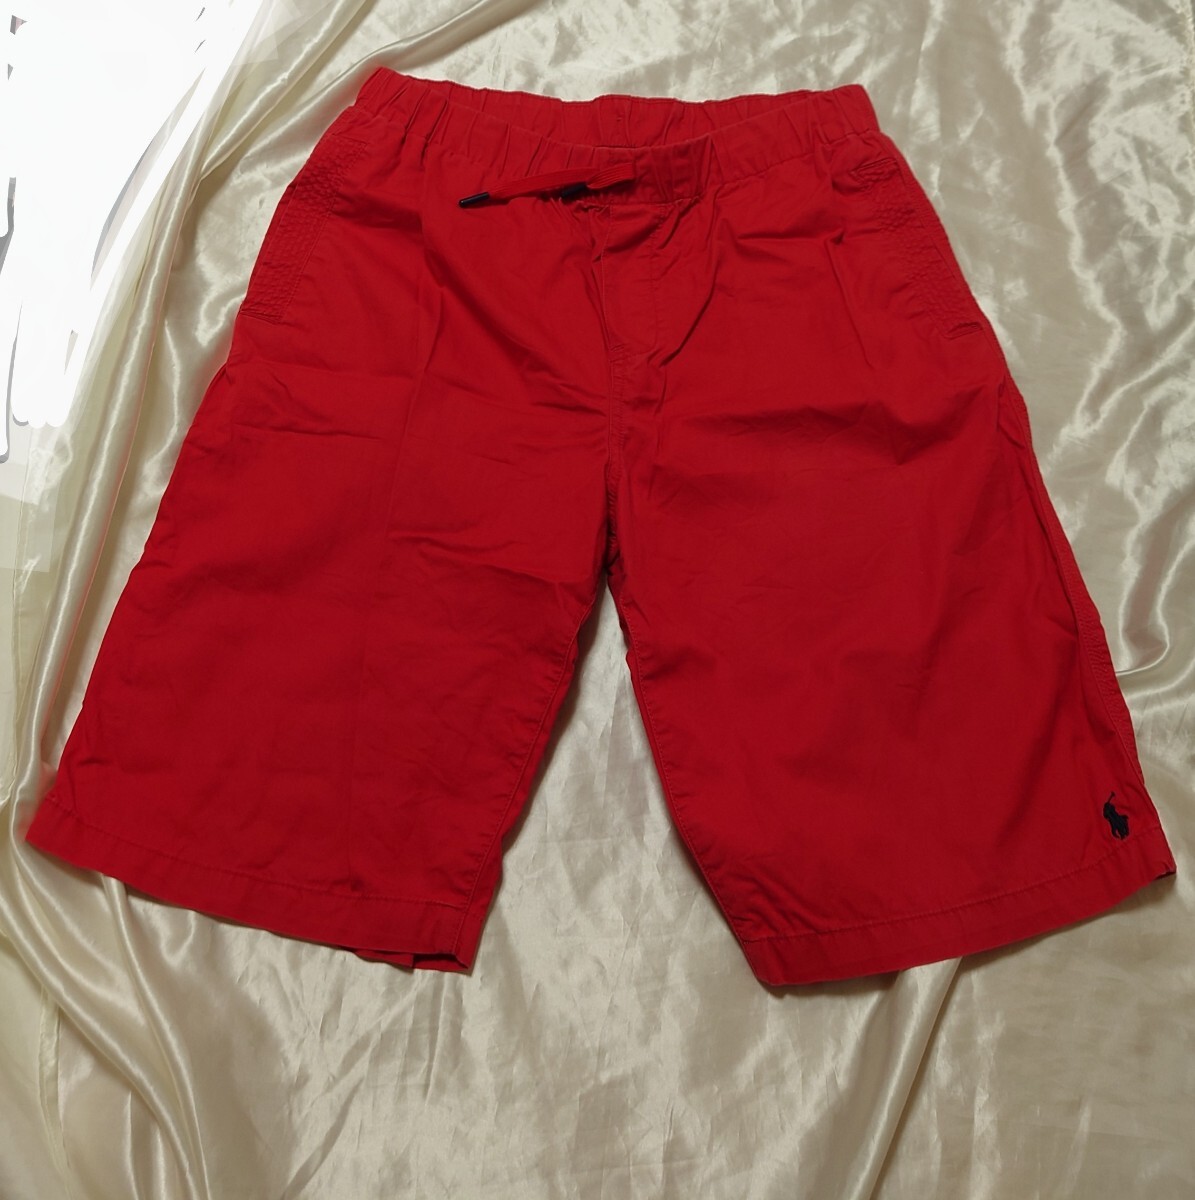  匿名配送 ラルフローレン 赤 短パン ハーフパンツ レッド ロゴありXL 男の子 ジュニア 日本サイズ170 ショートパンツの画像1